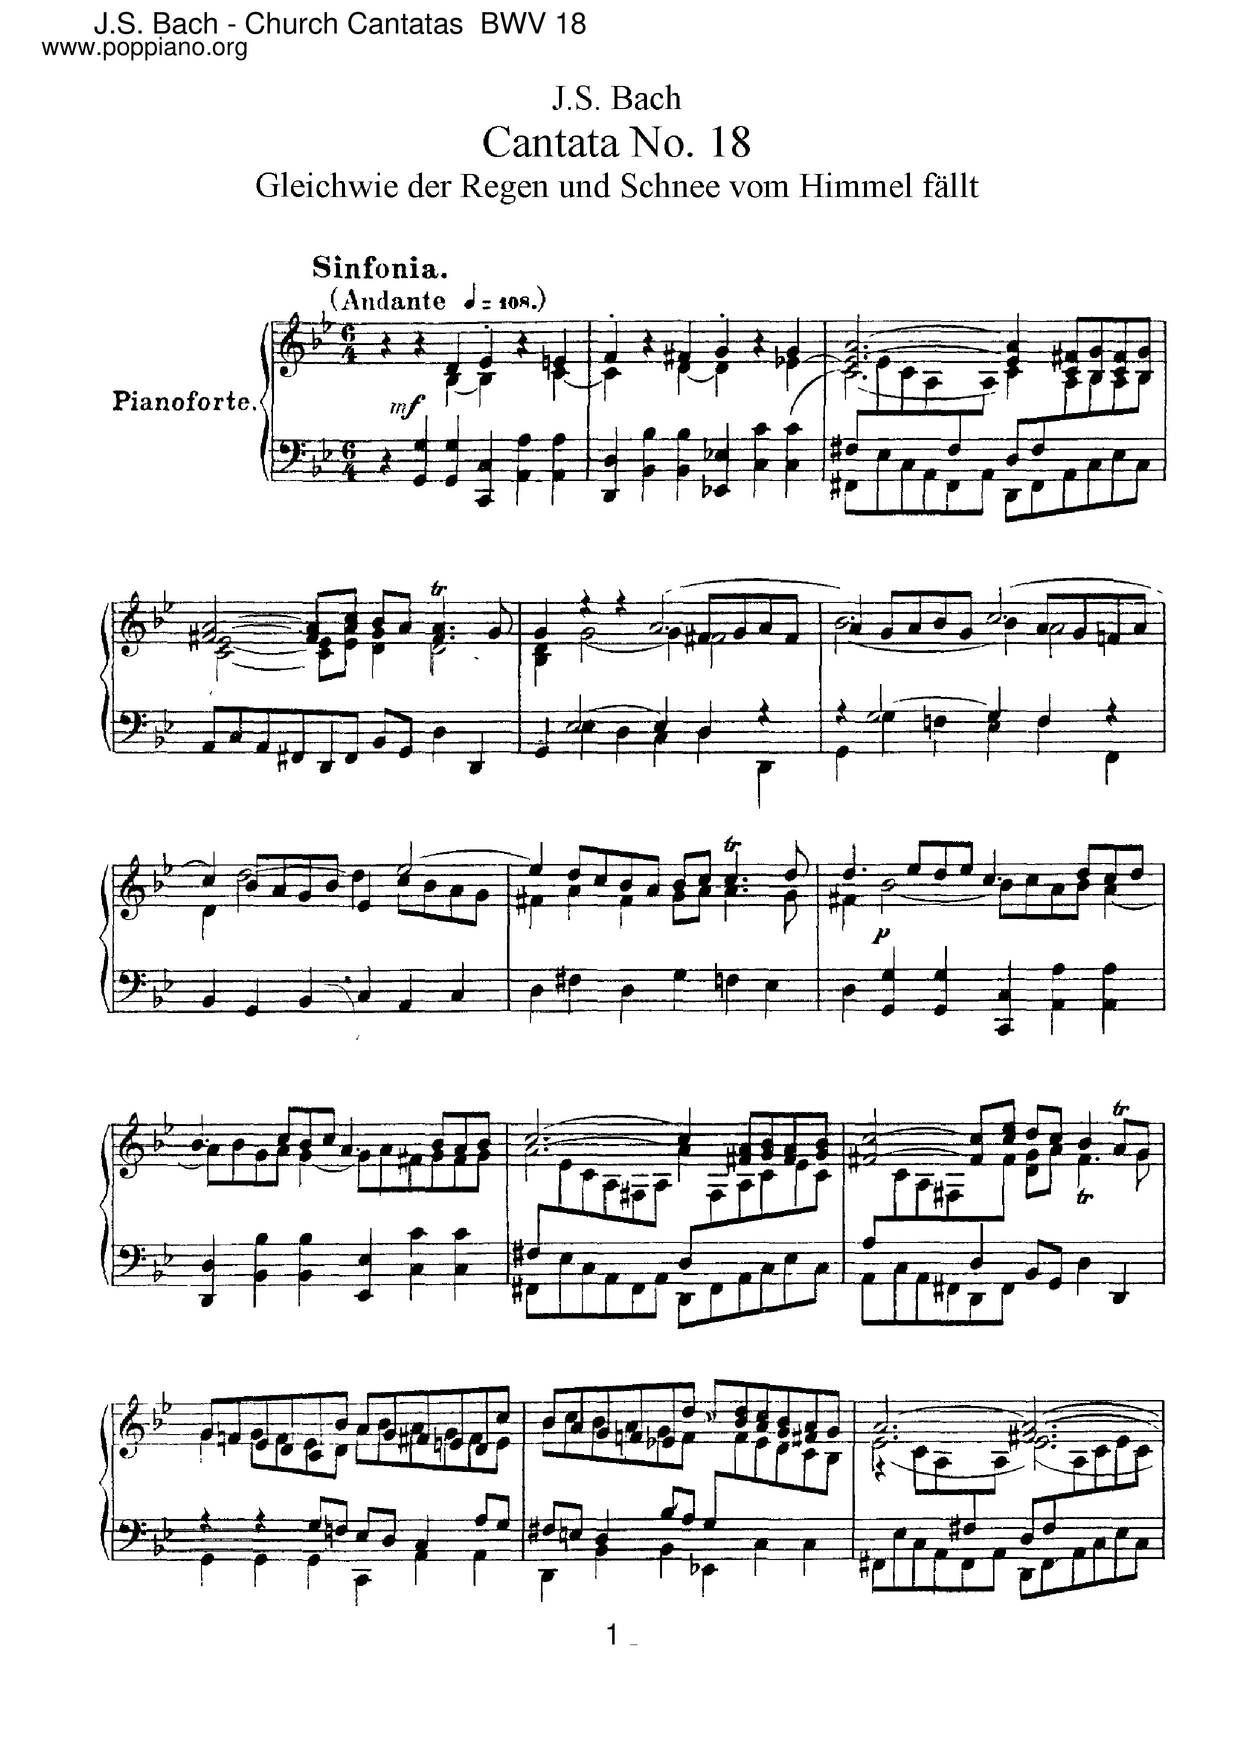 Gleichwie Der Regen Und Schnee Vom Himmel Fällt, BWV 18 Score